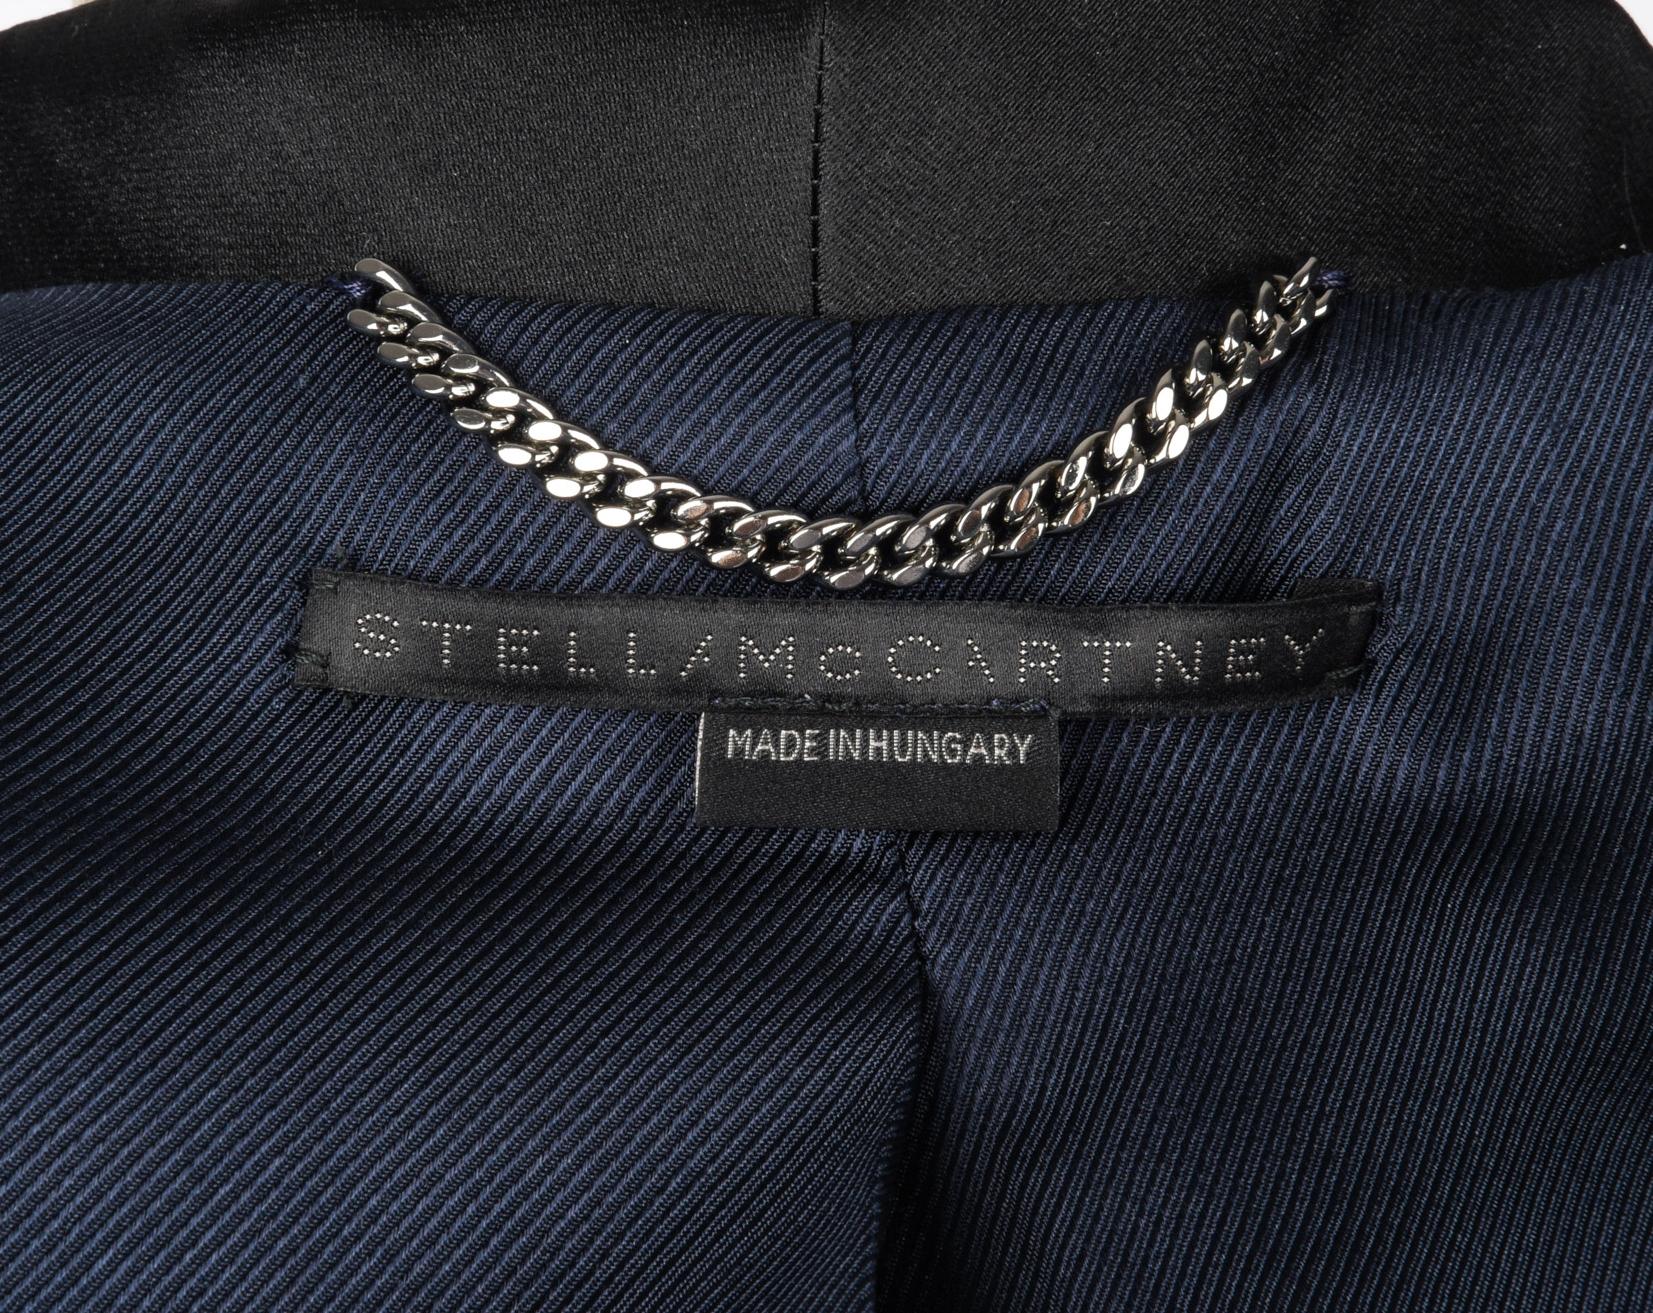 Stella McCartney Jacket Tuxedo Style Navy Velvet Black Trim 38 / 6 10